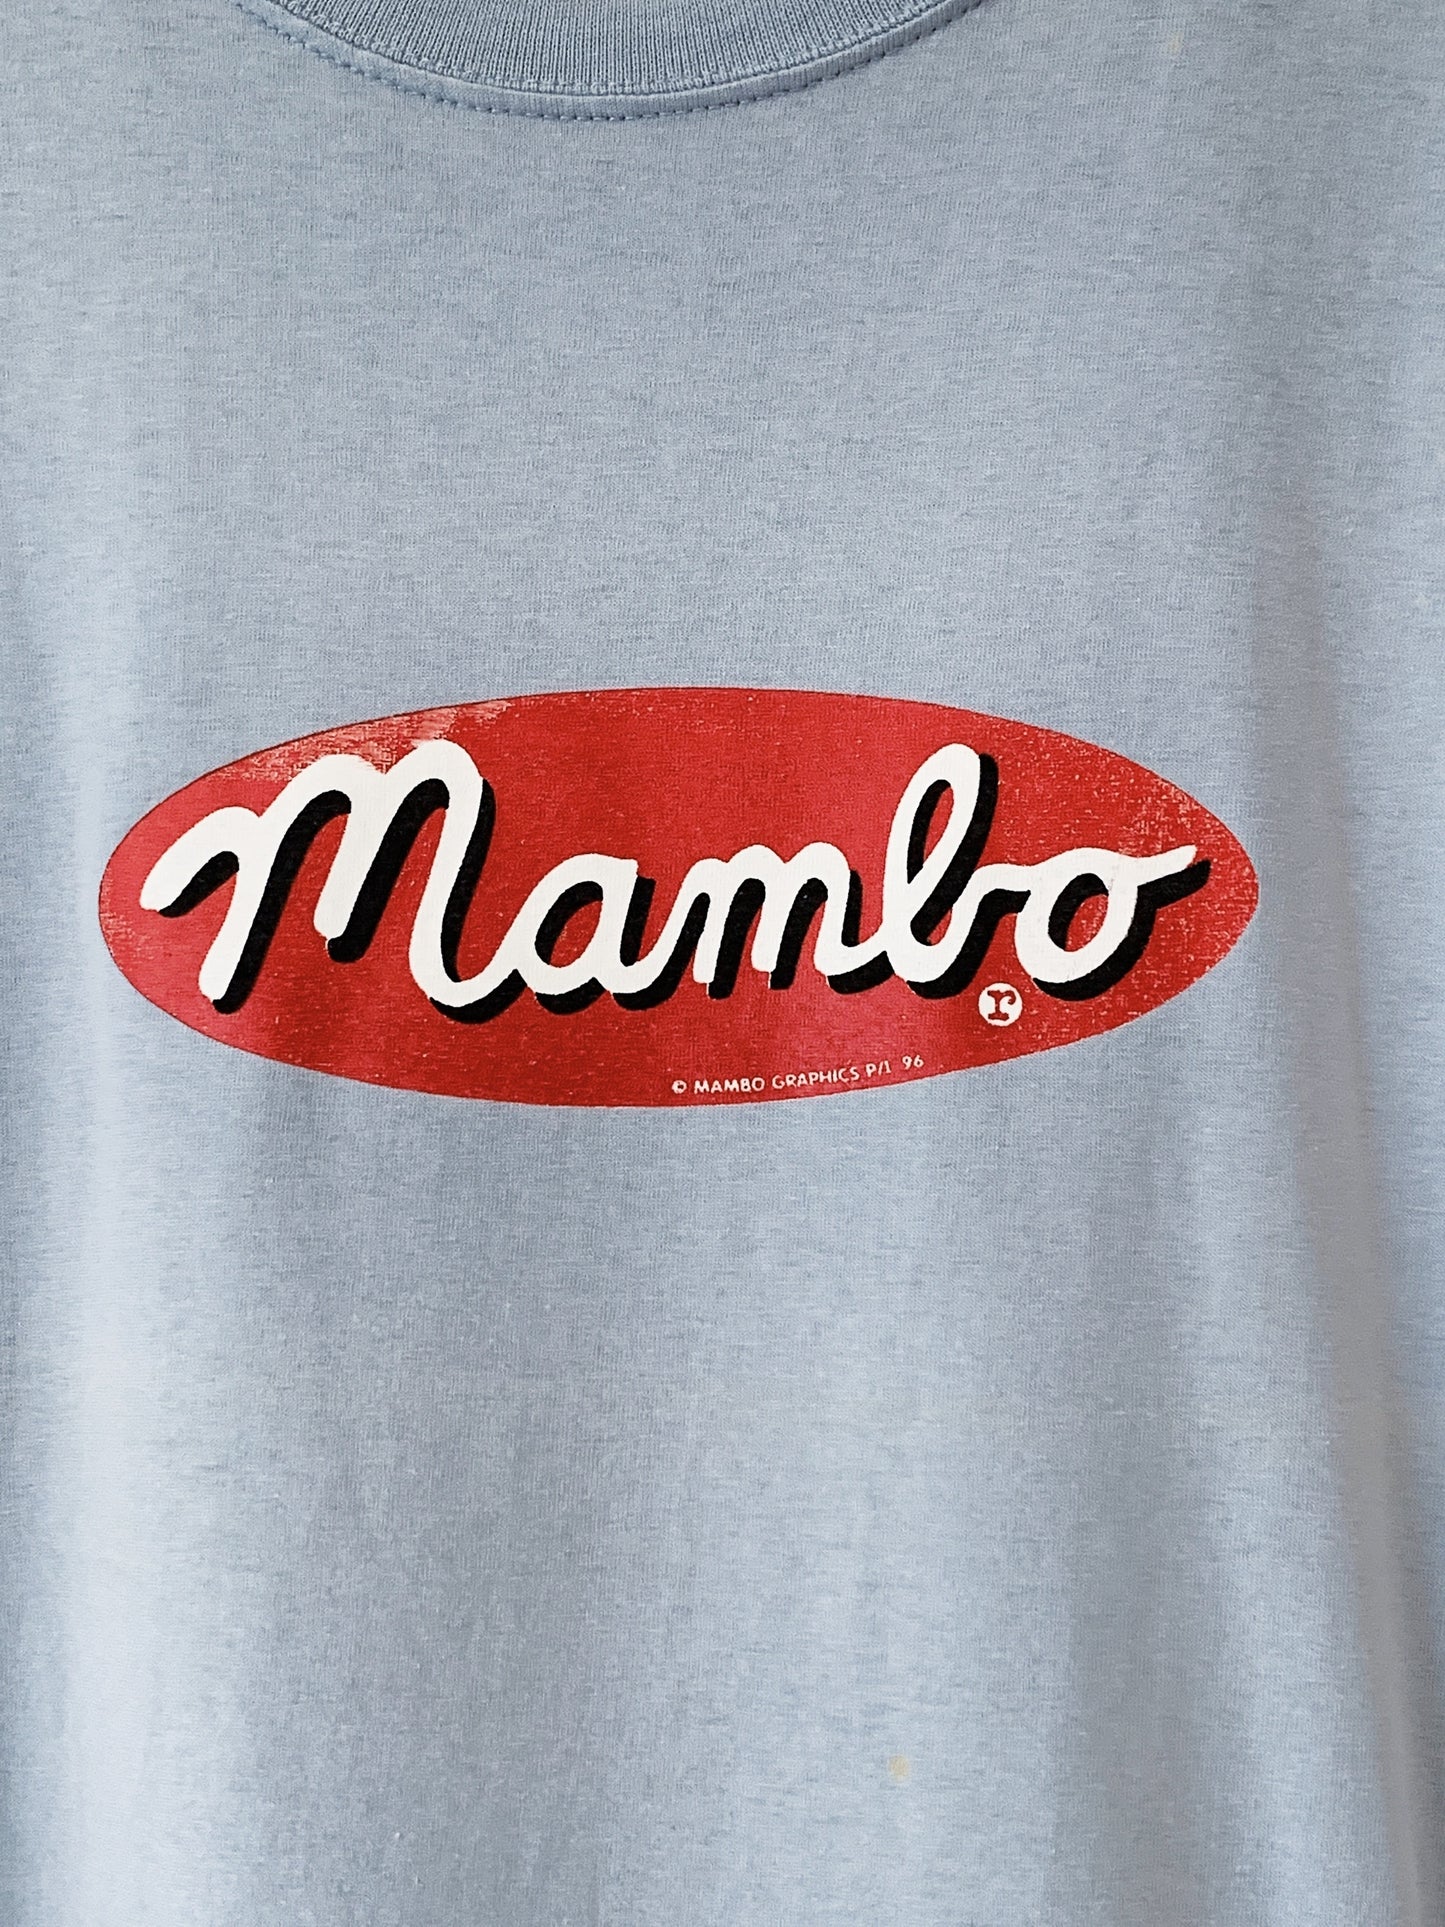 Vintage Reg Mombassa for Mambo "Goulburn Shower" '96 T-Shirt